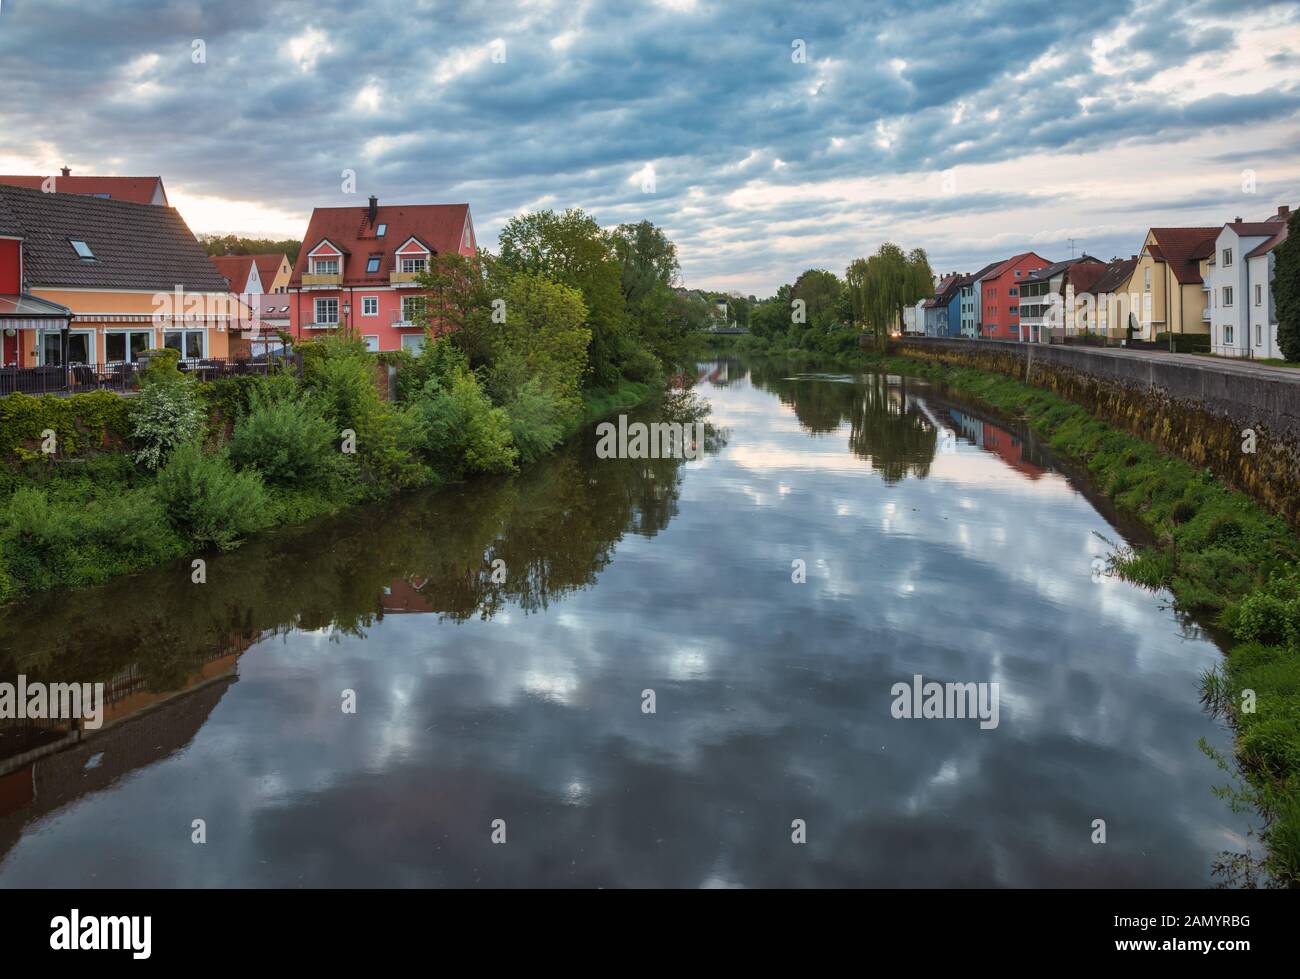 Edifici colorati lungo il fiume Wornitz in una luce del mattino, Donauworth, Swabia, Baviera, Germania Foto Stock